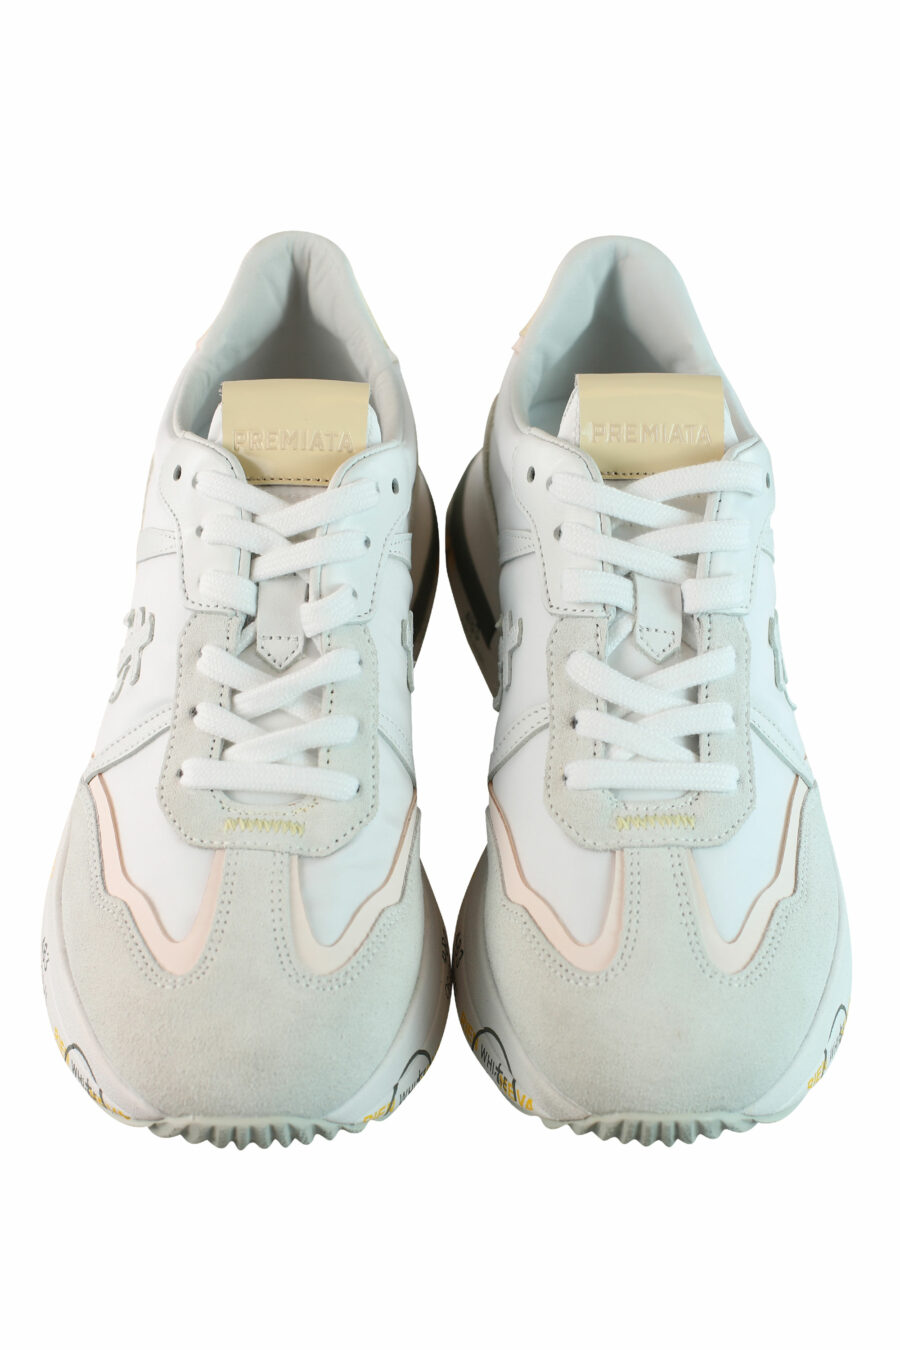 Zapatillas blancas con gris multicolor "cassie 6343" - IMG 0839